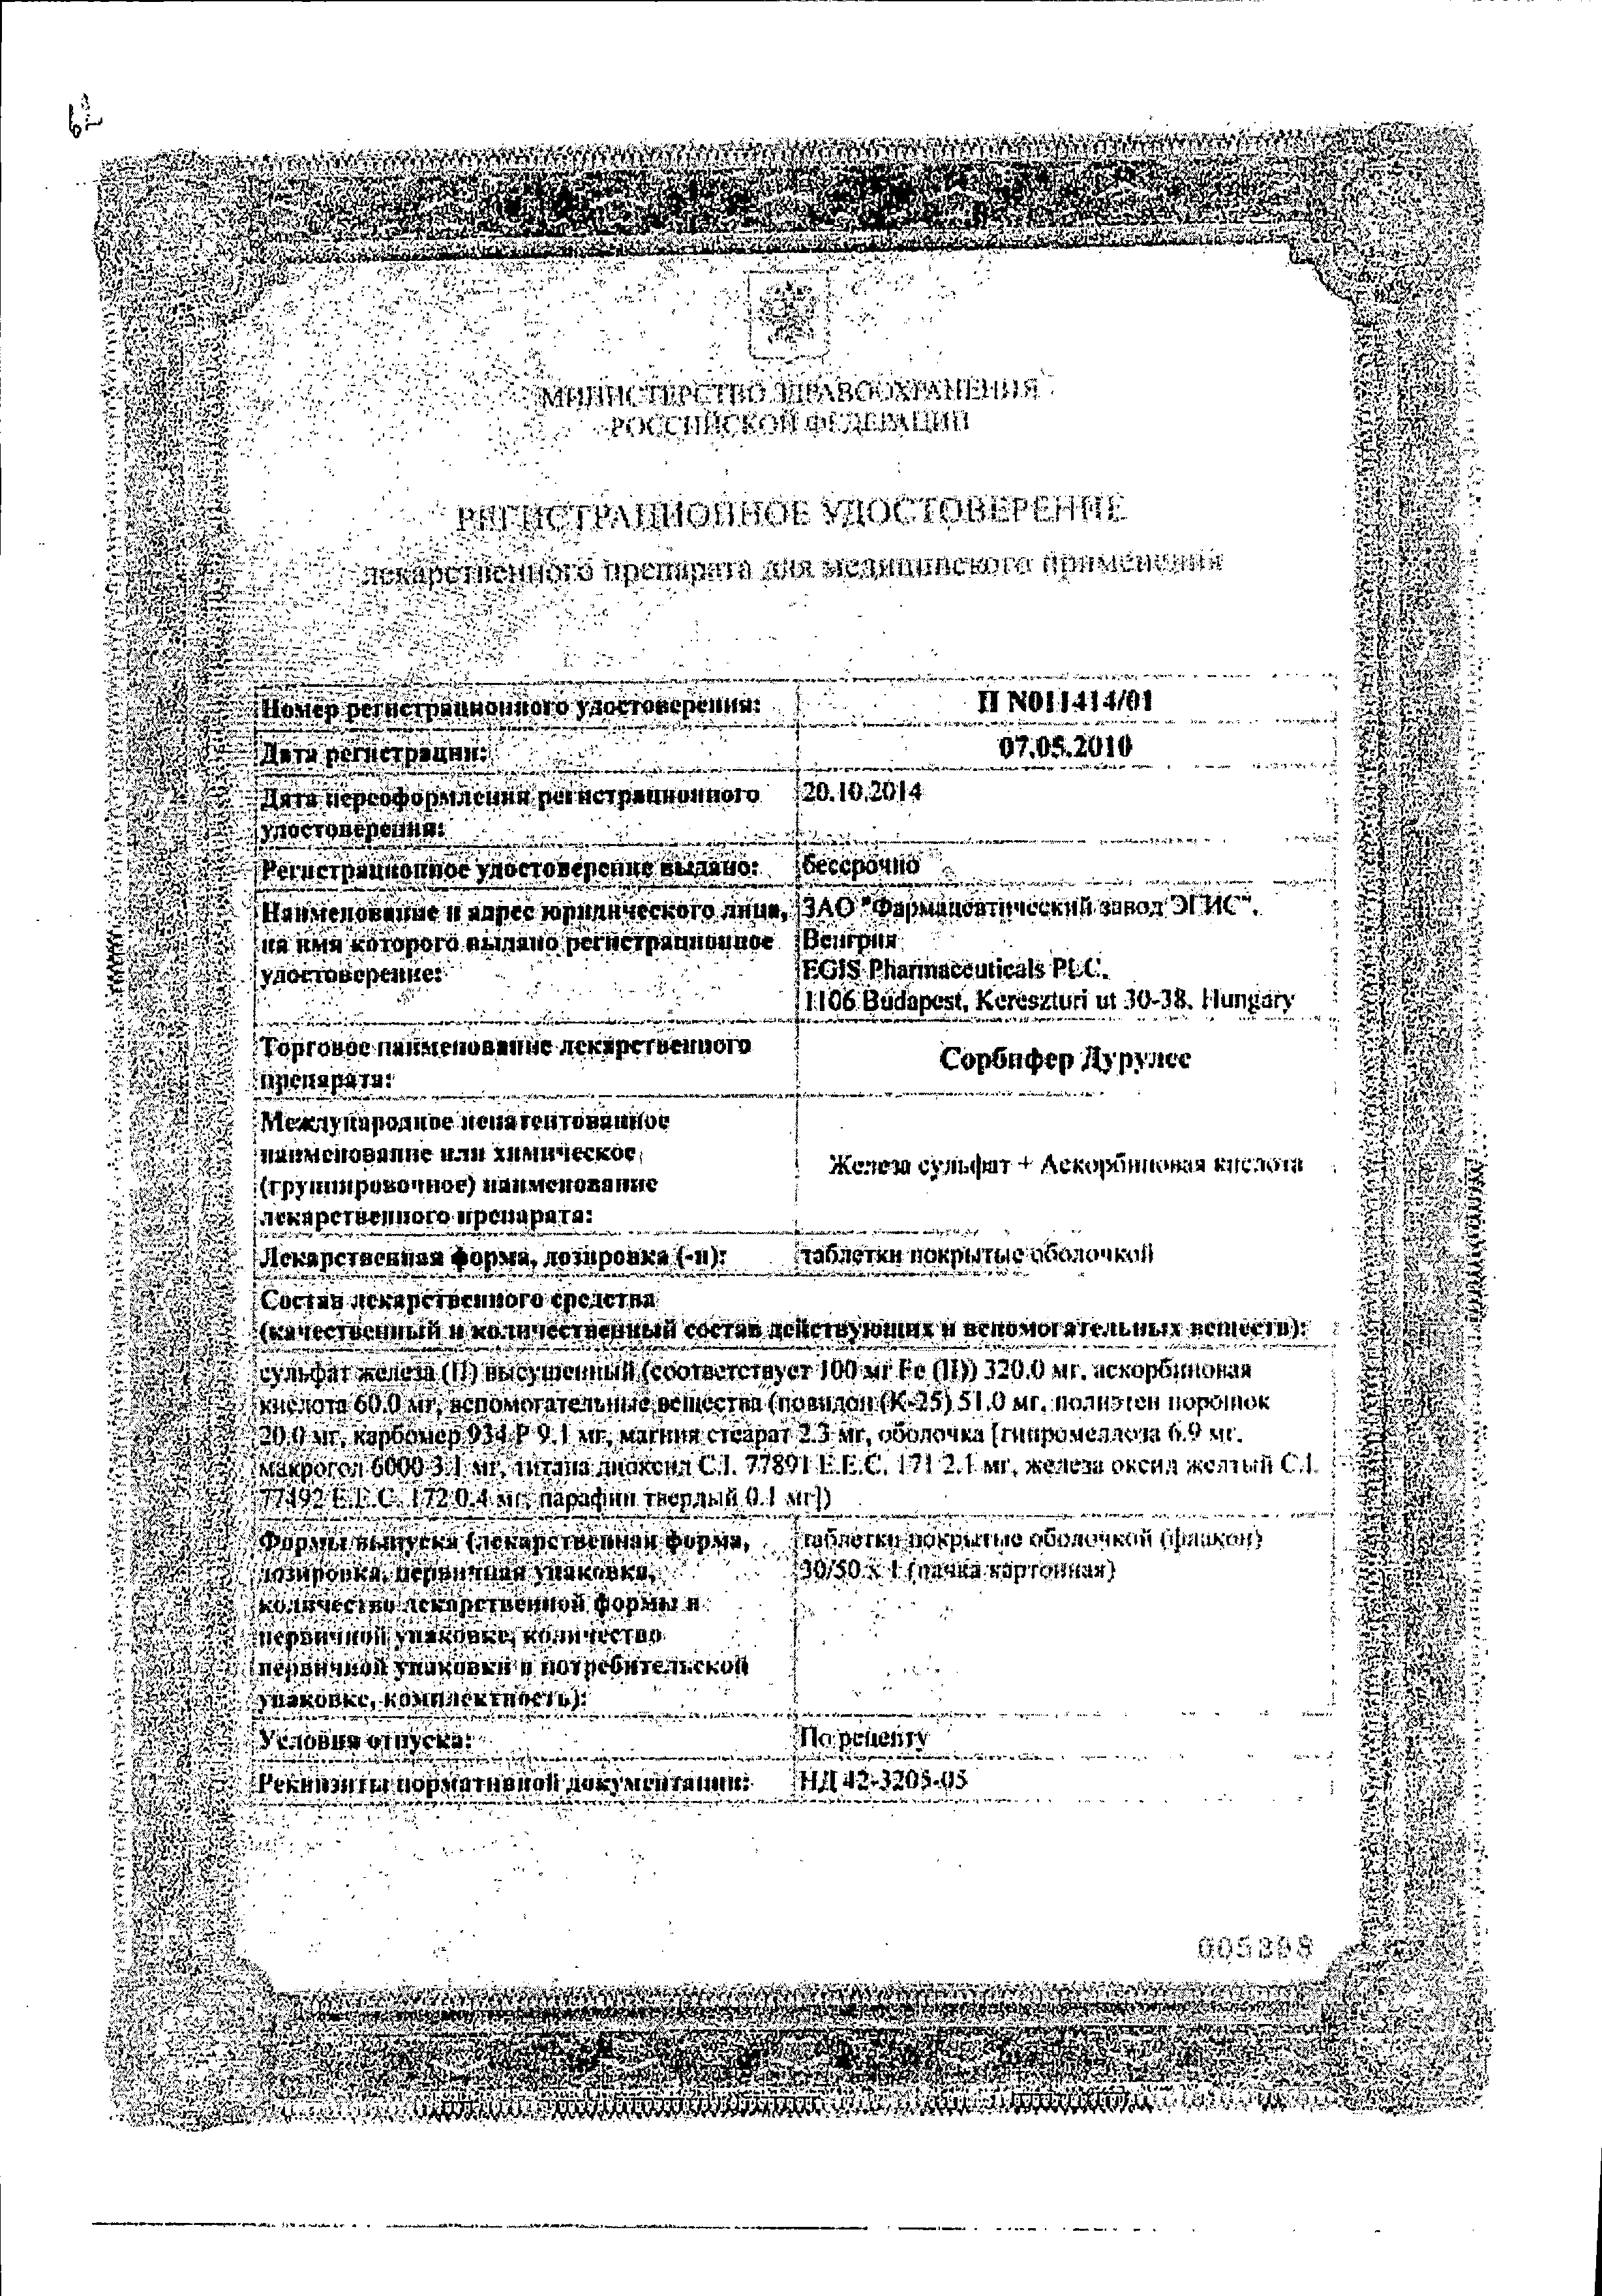 Сорбифер Дурулес сертификат